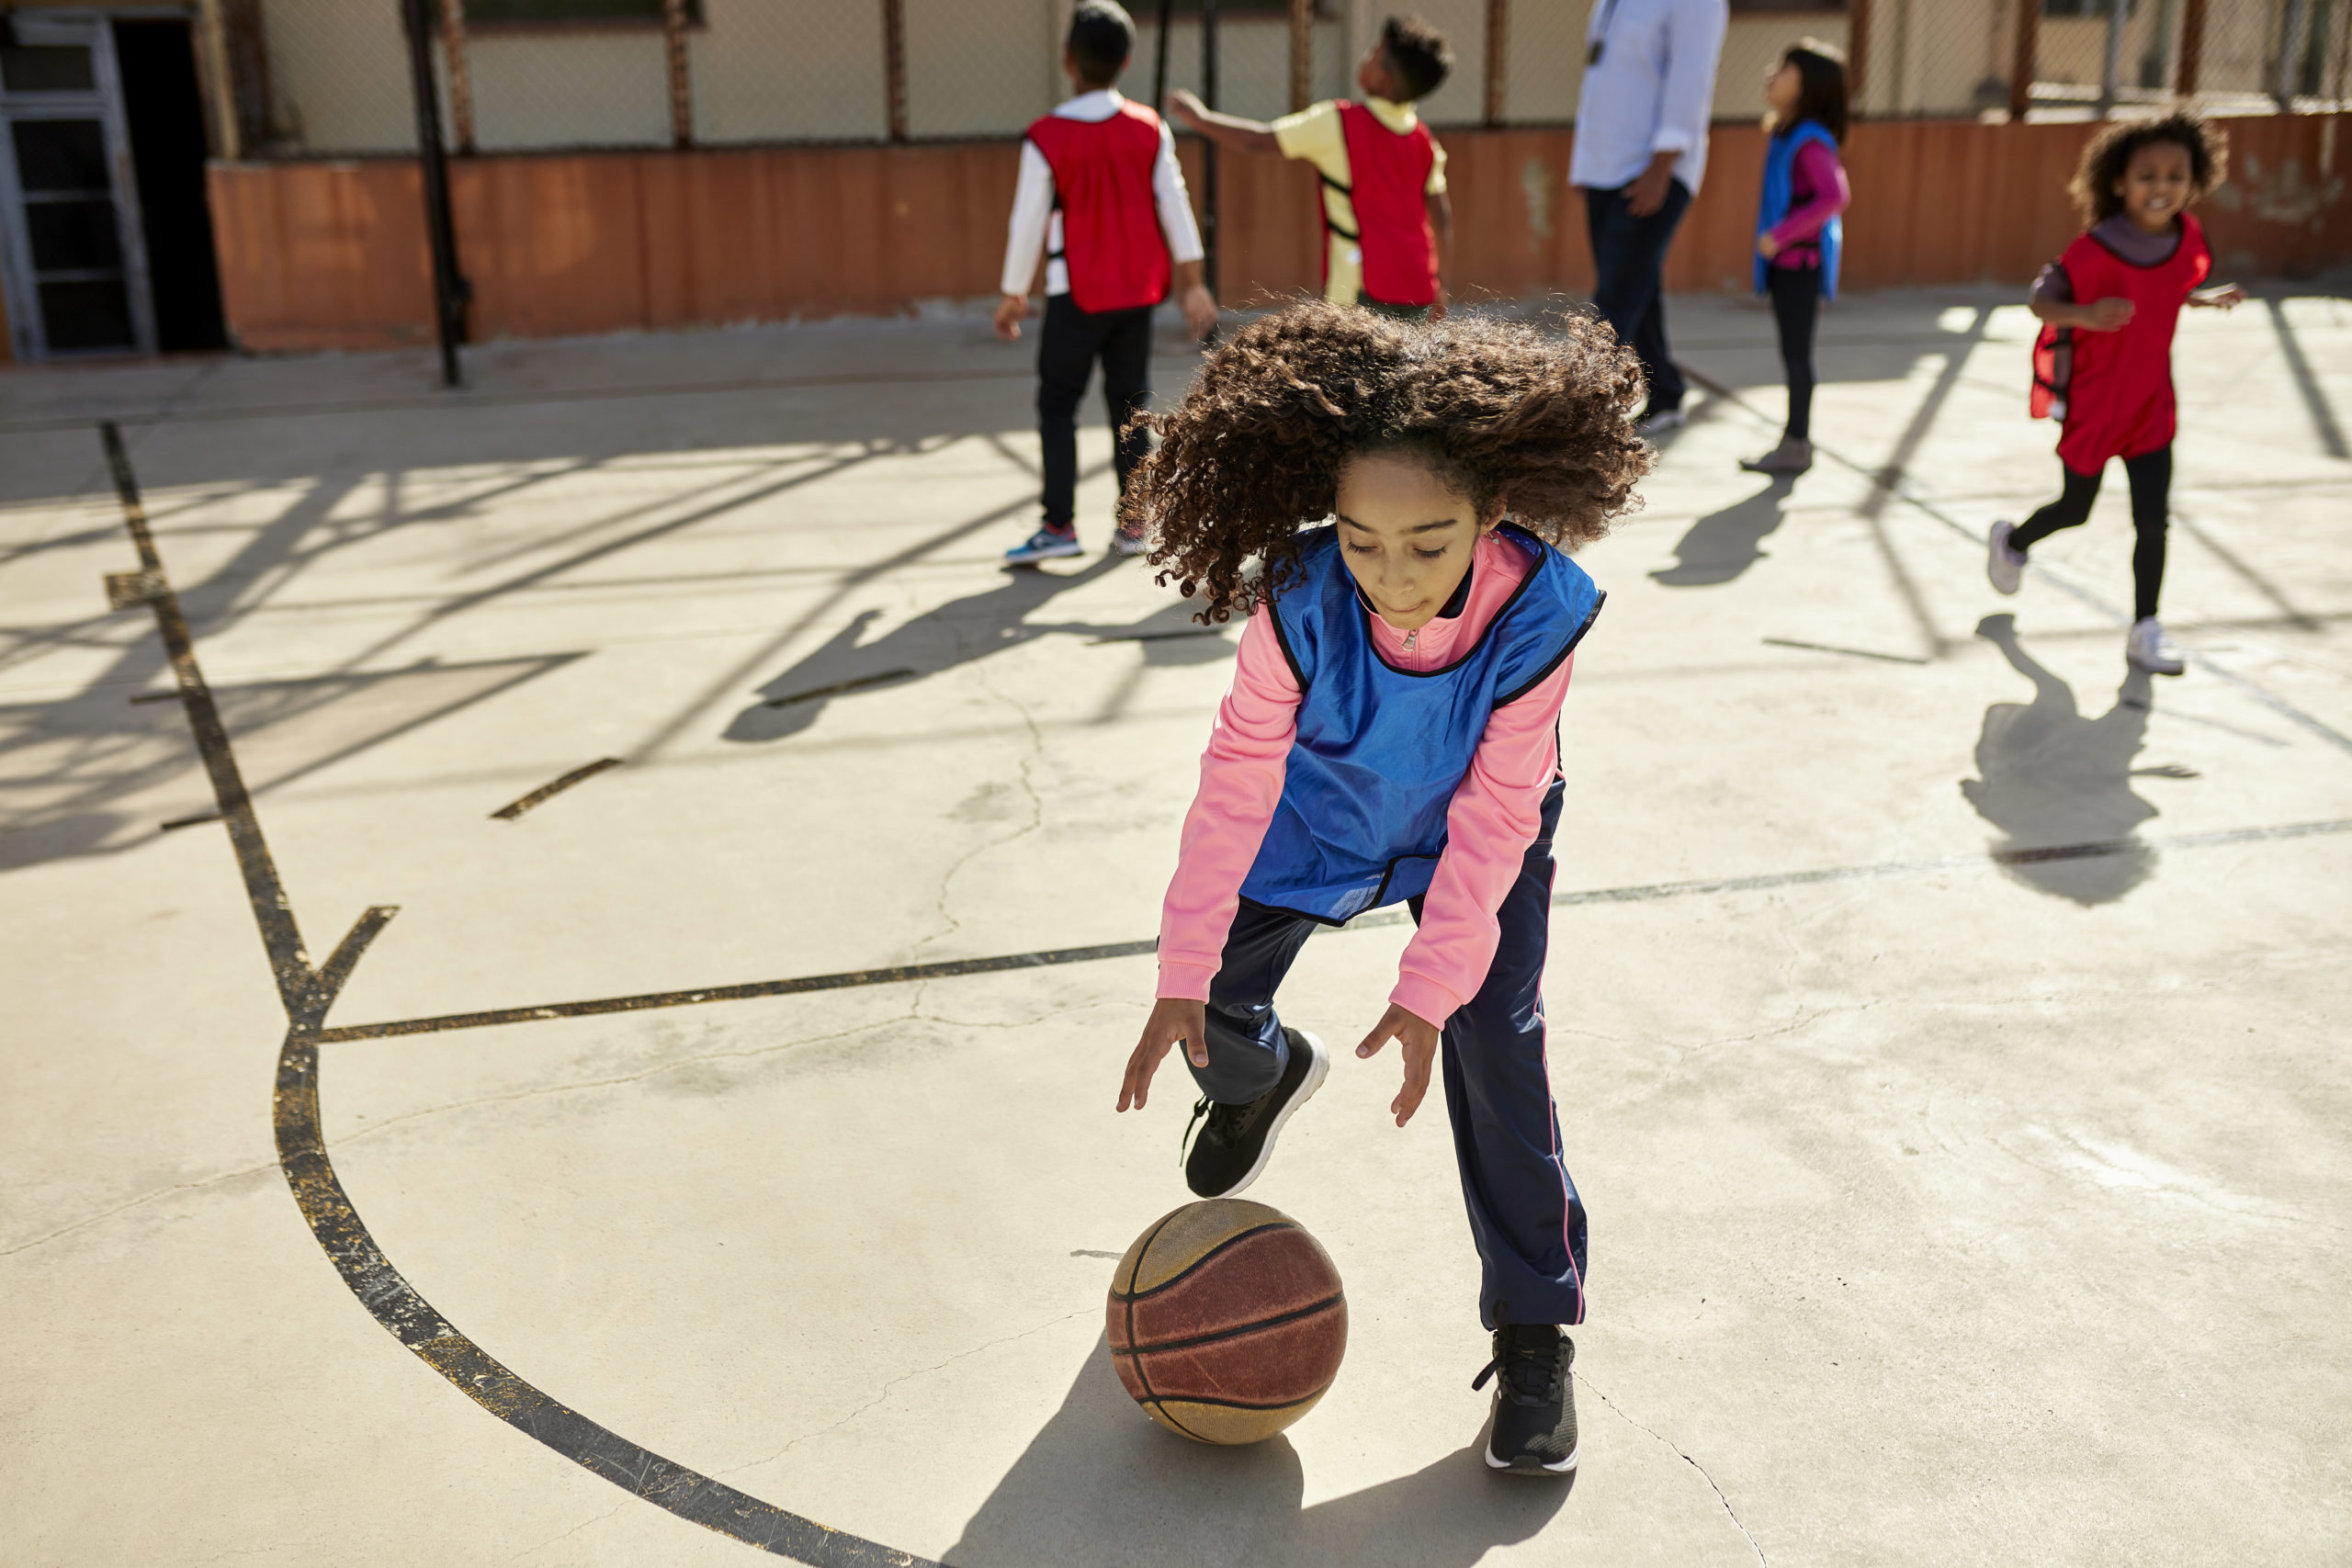 Companhia Belém on X: O NBA Basketball School é o programa de  desenvolvimento de crianças e jovens atletas através do ensino de basquete  com a metodologia da NBA.⁣ ⁣ Faça já sua